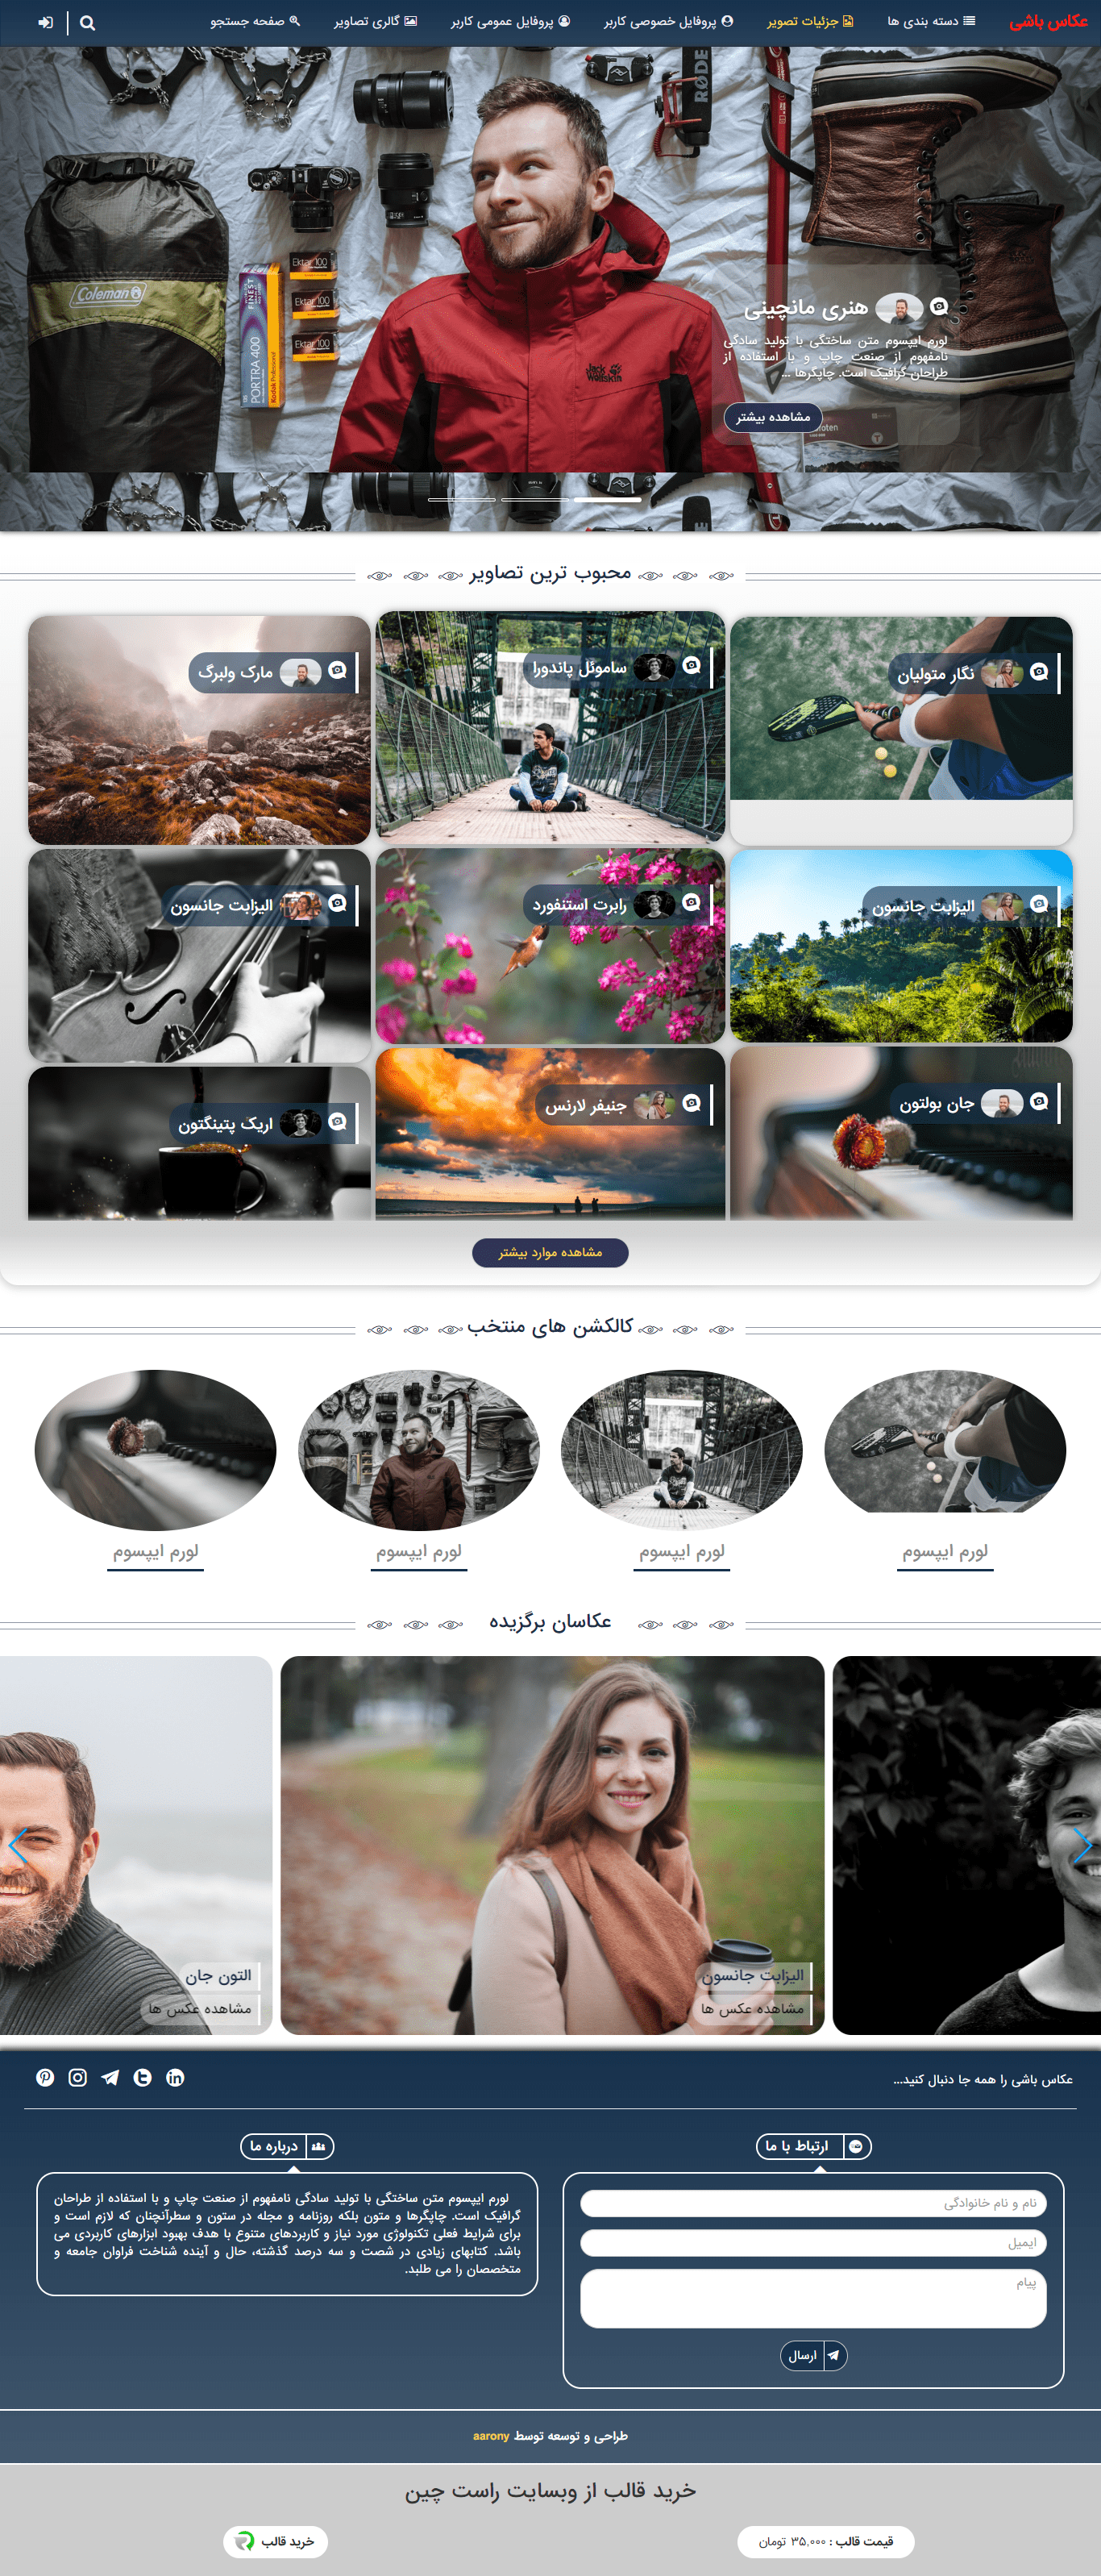 قالب HTML عکاس باشی قالب حرفه ای و مدرن عکاسی | قالب عکاس باشی با طراحی ایرانی